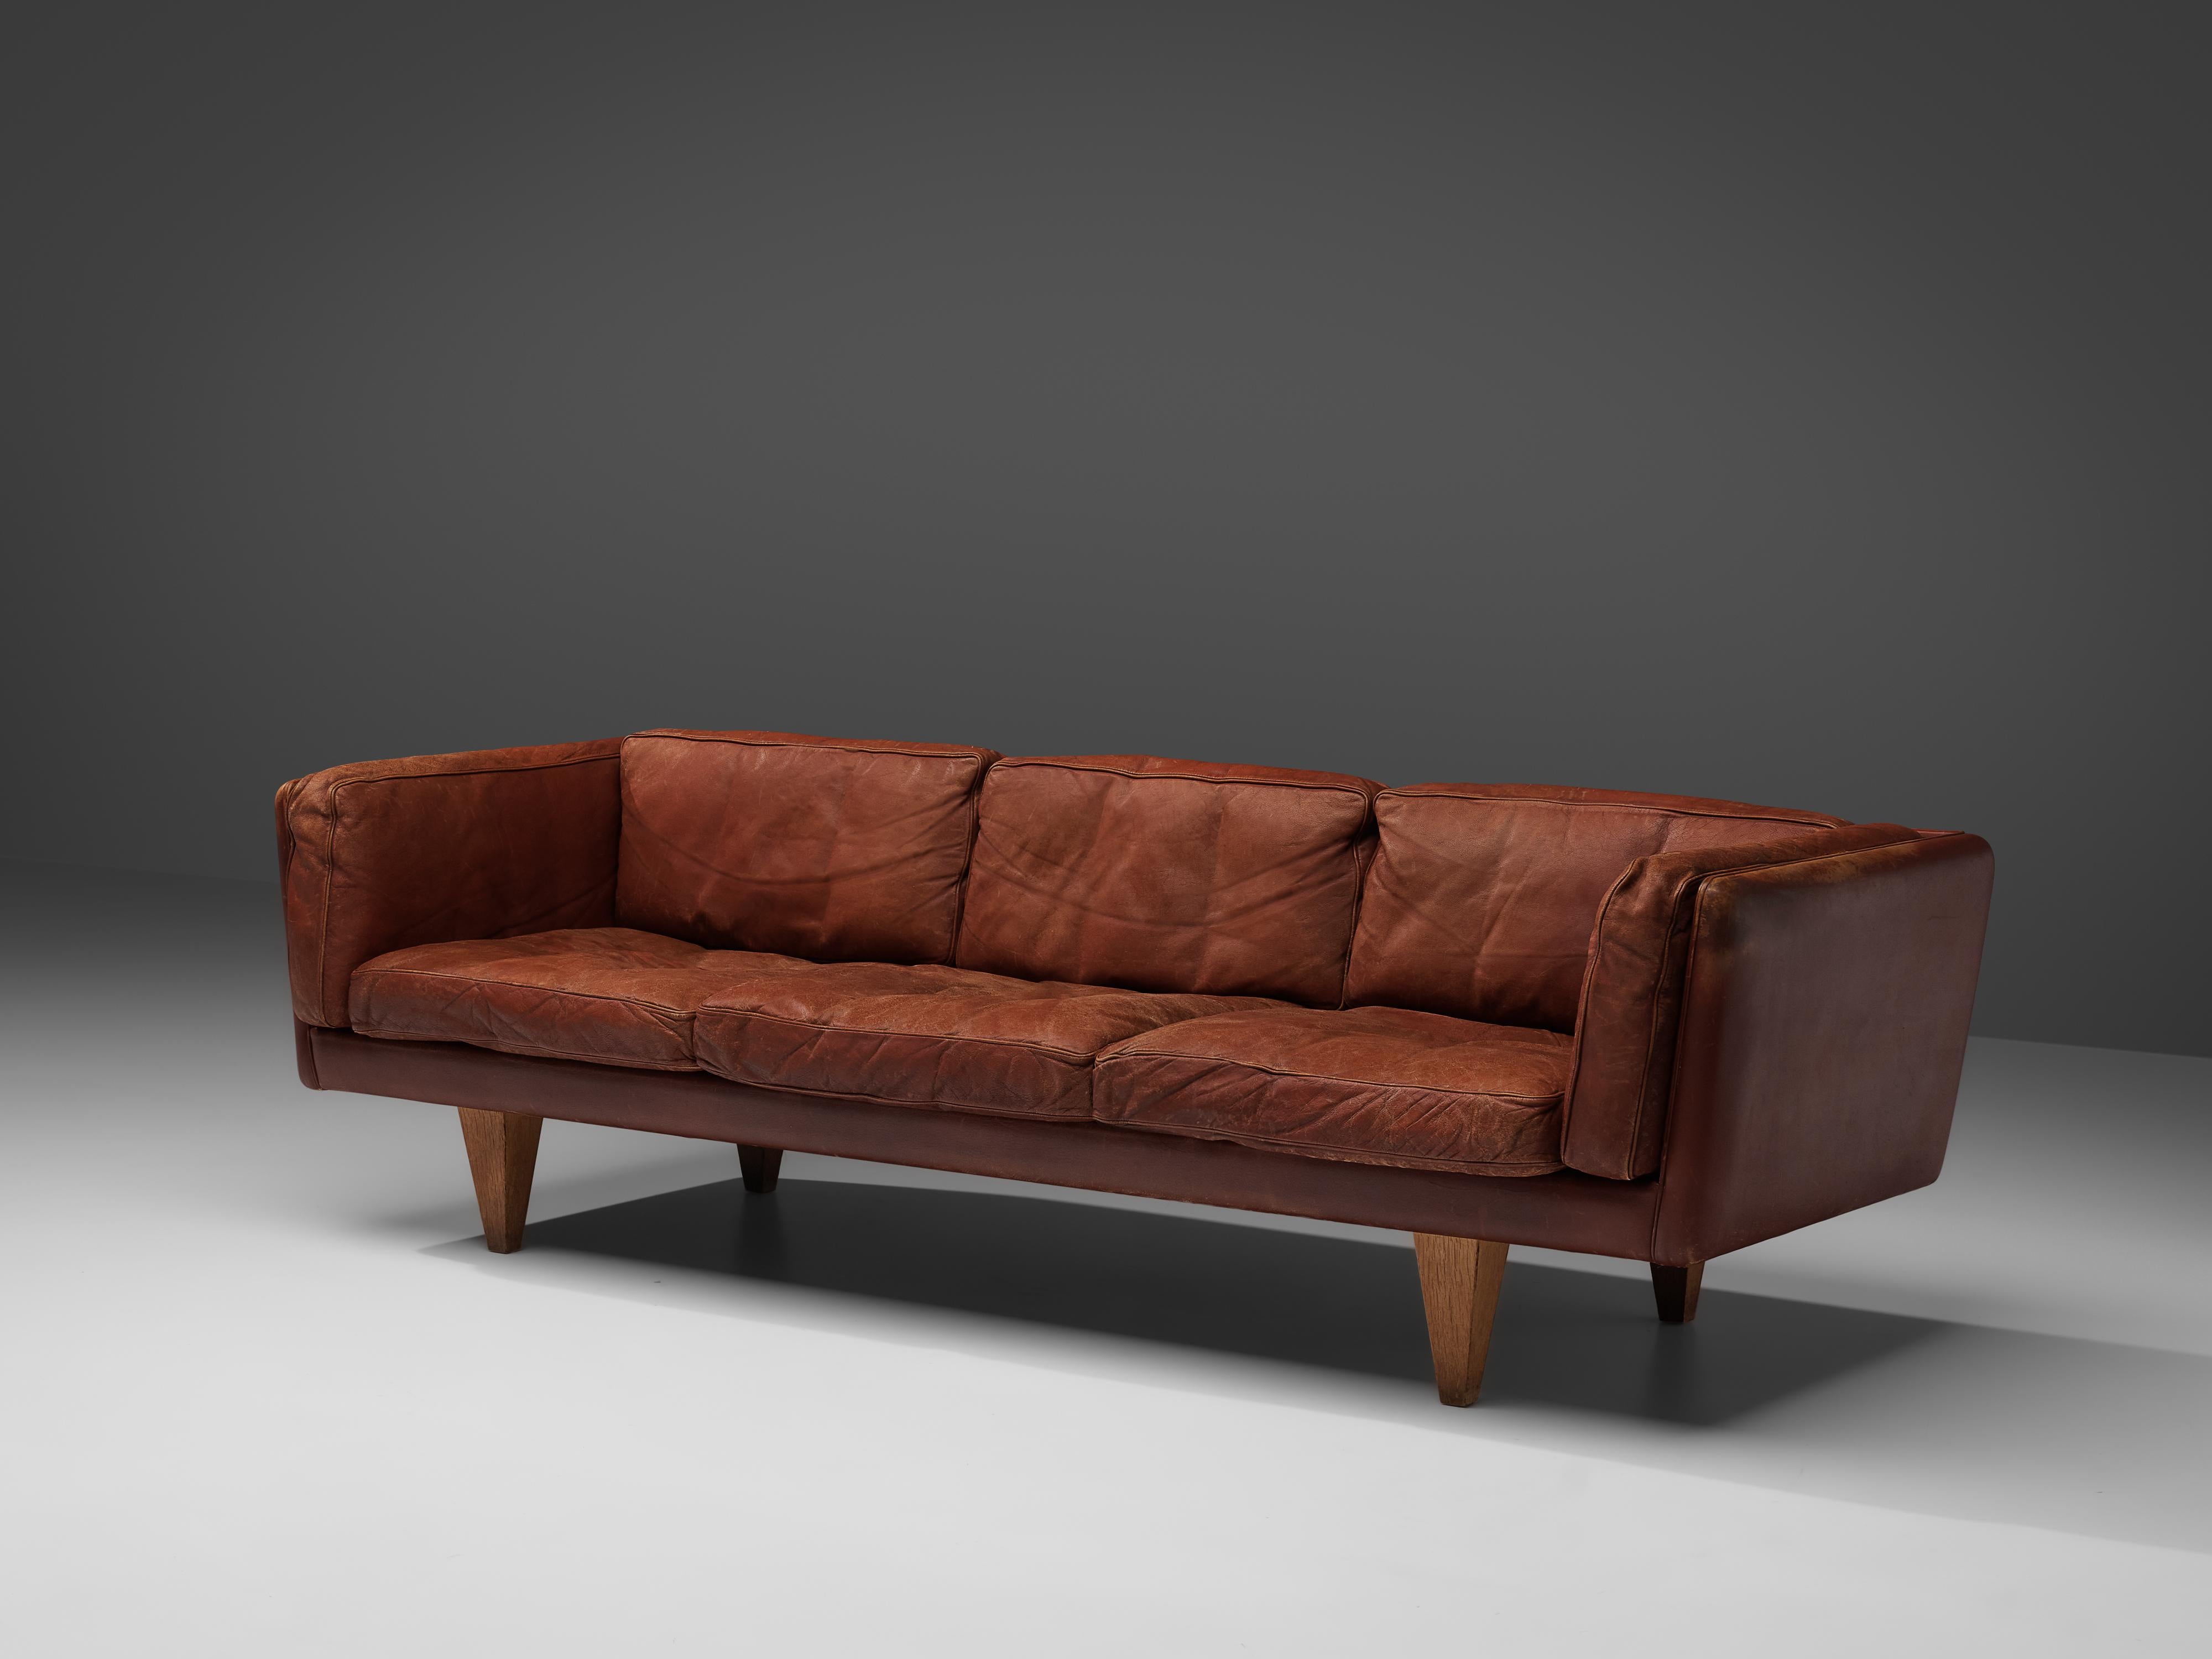 Danish Illum Wikkelsø for Holger Christiansen Three-Seat Sofa in Brown Leather